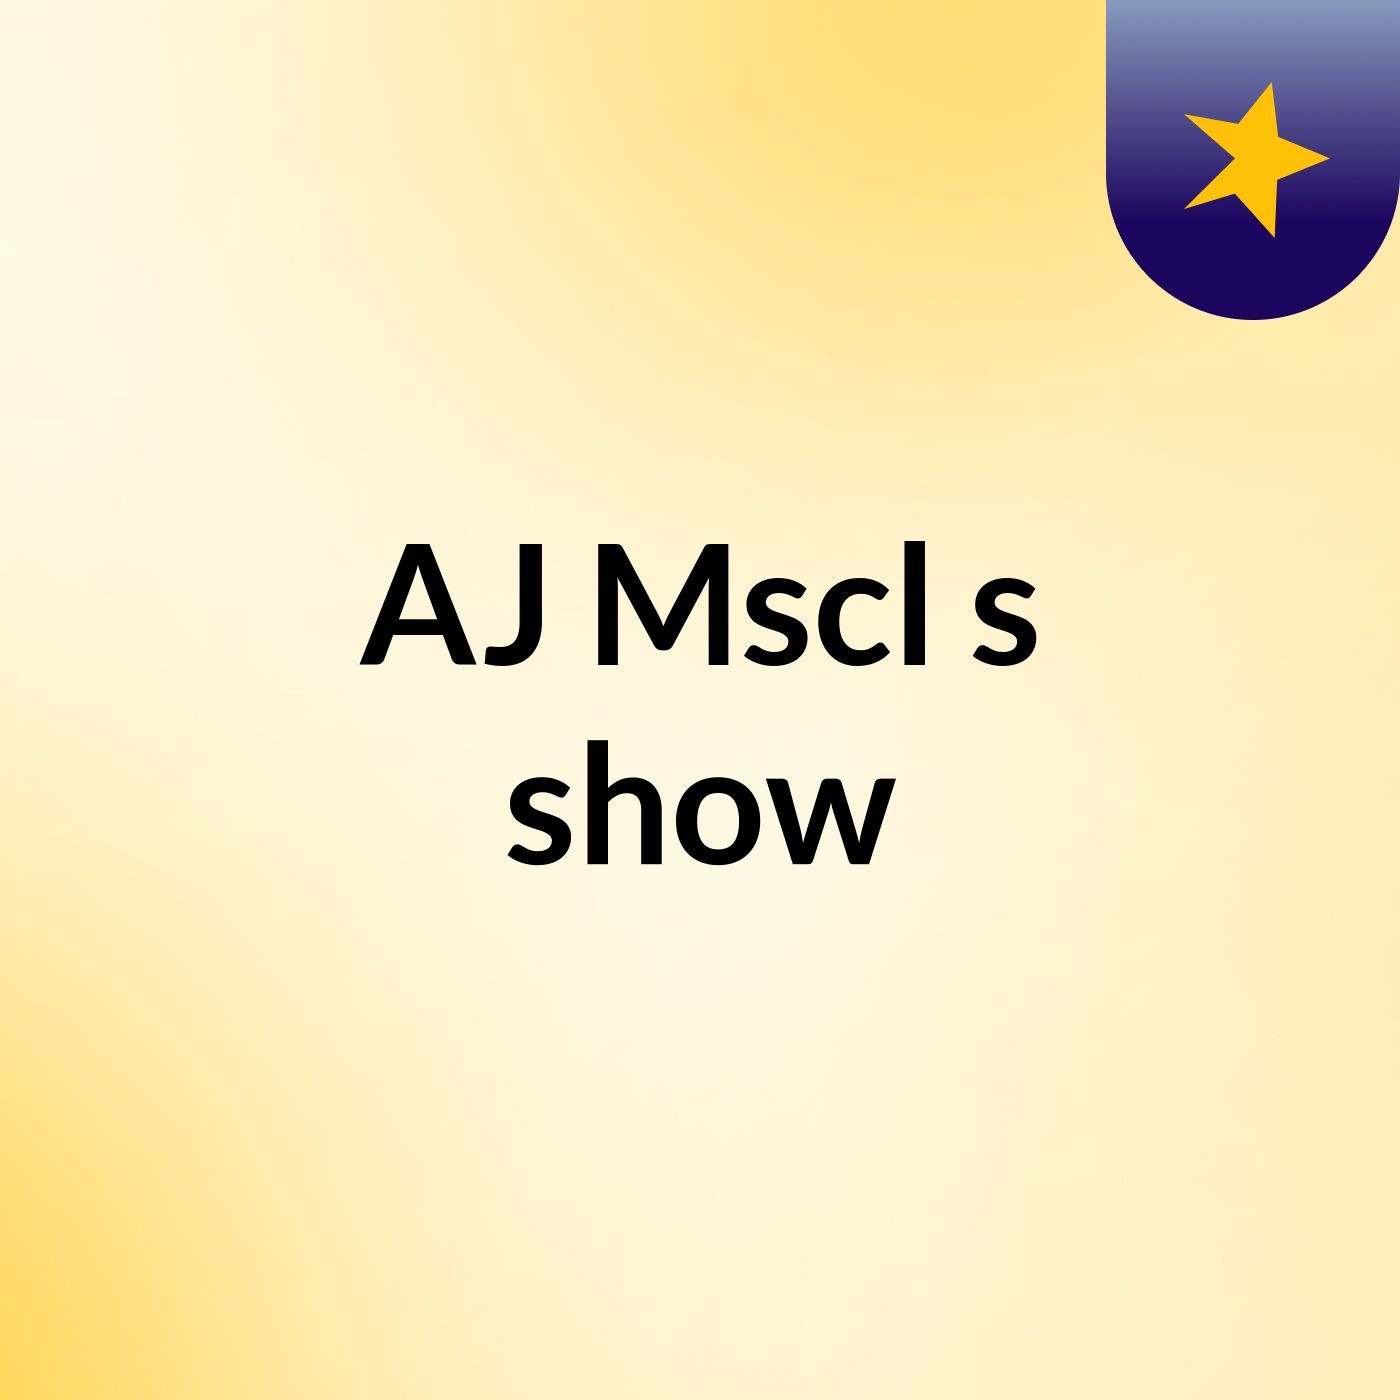 AJ Mscl's show